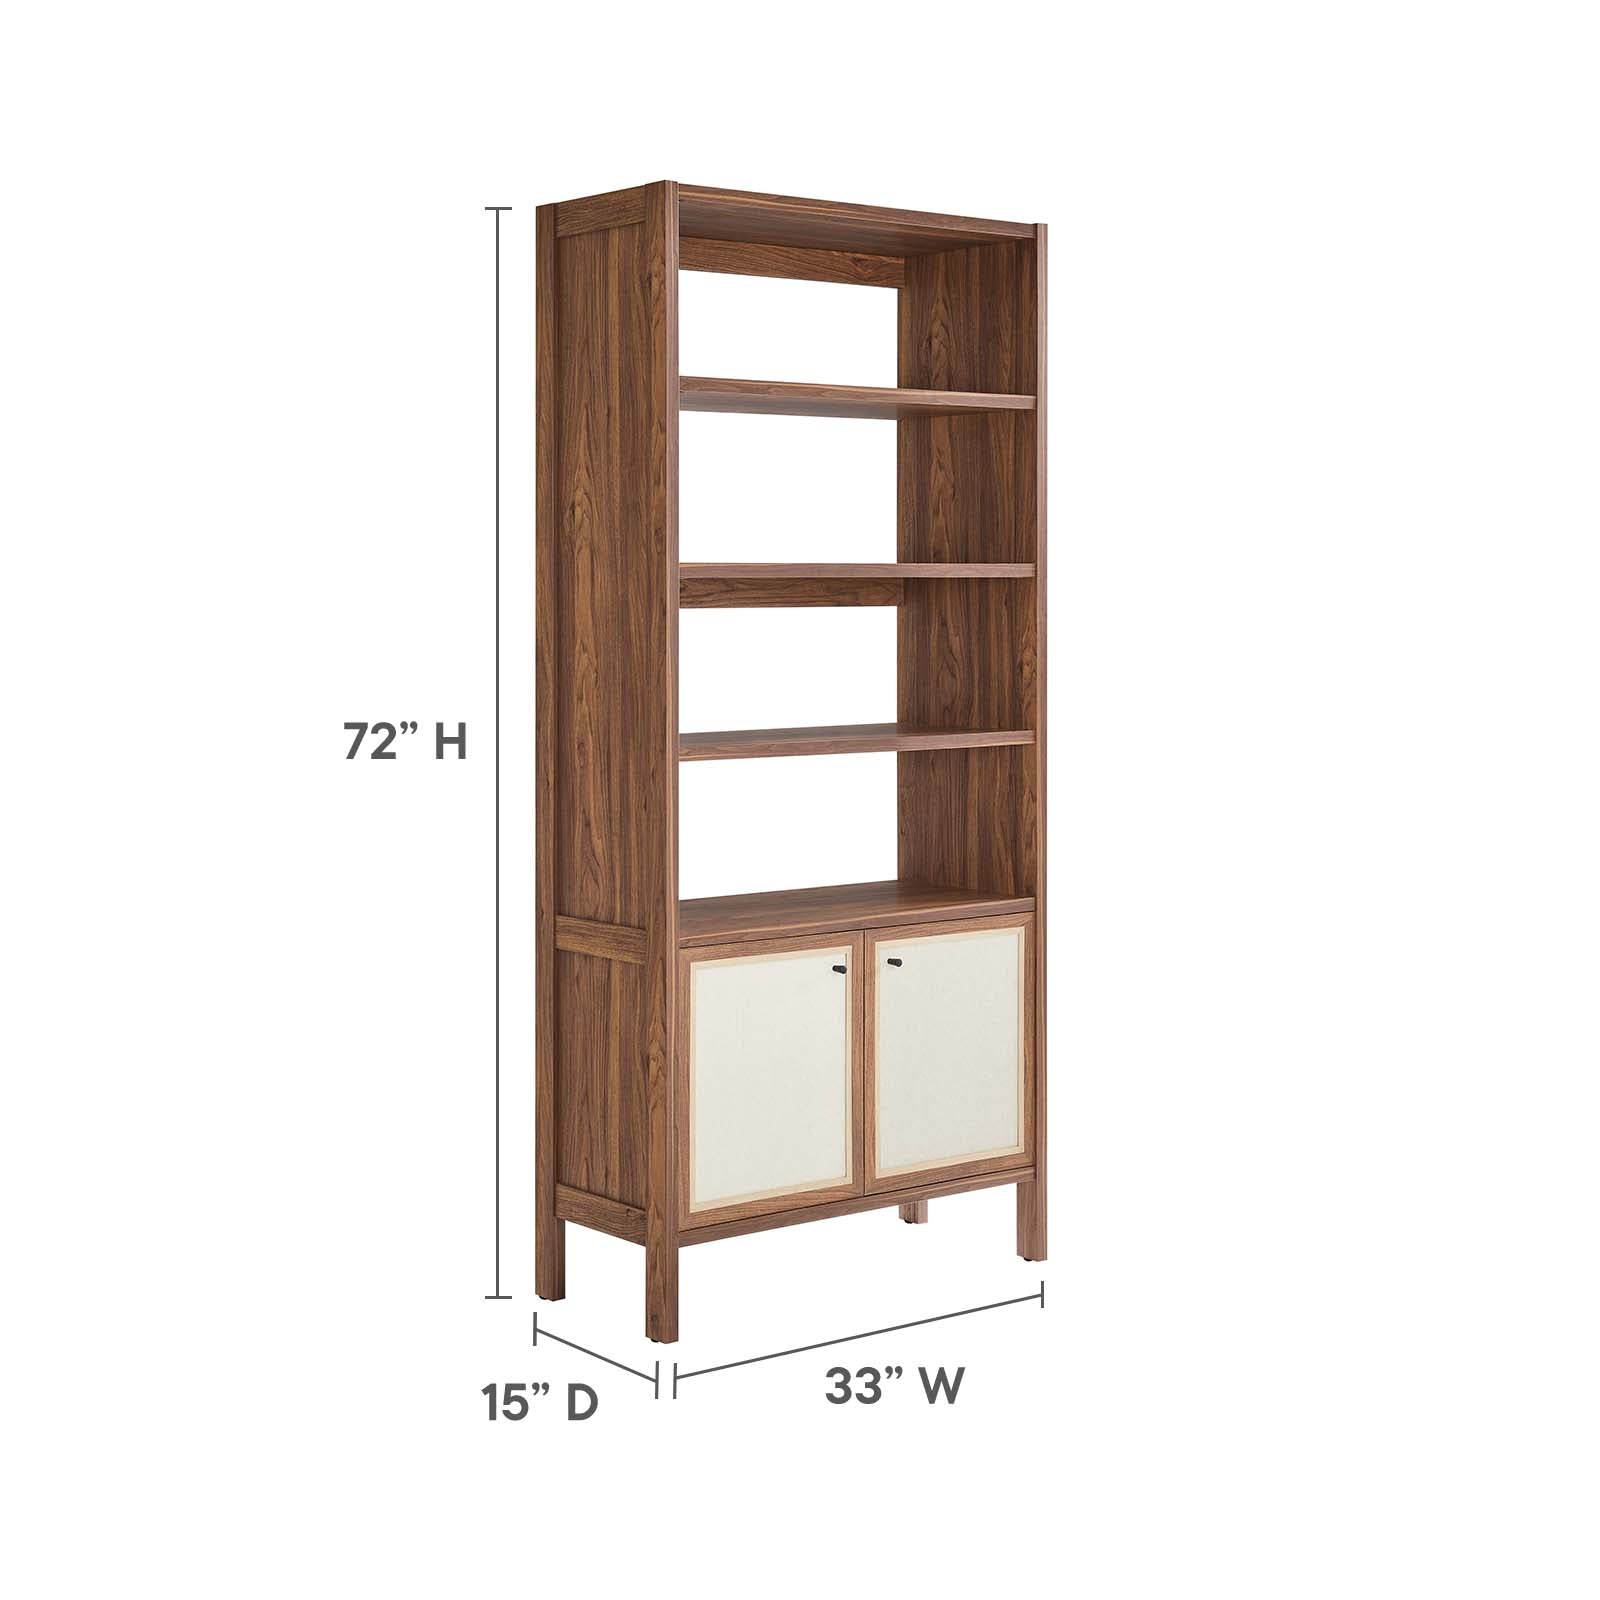 Capri 4-Shelf Wood Grain Bookcase - East Shore Modern Home Furnishings